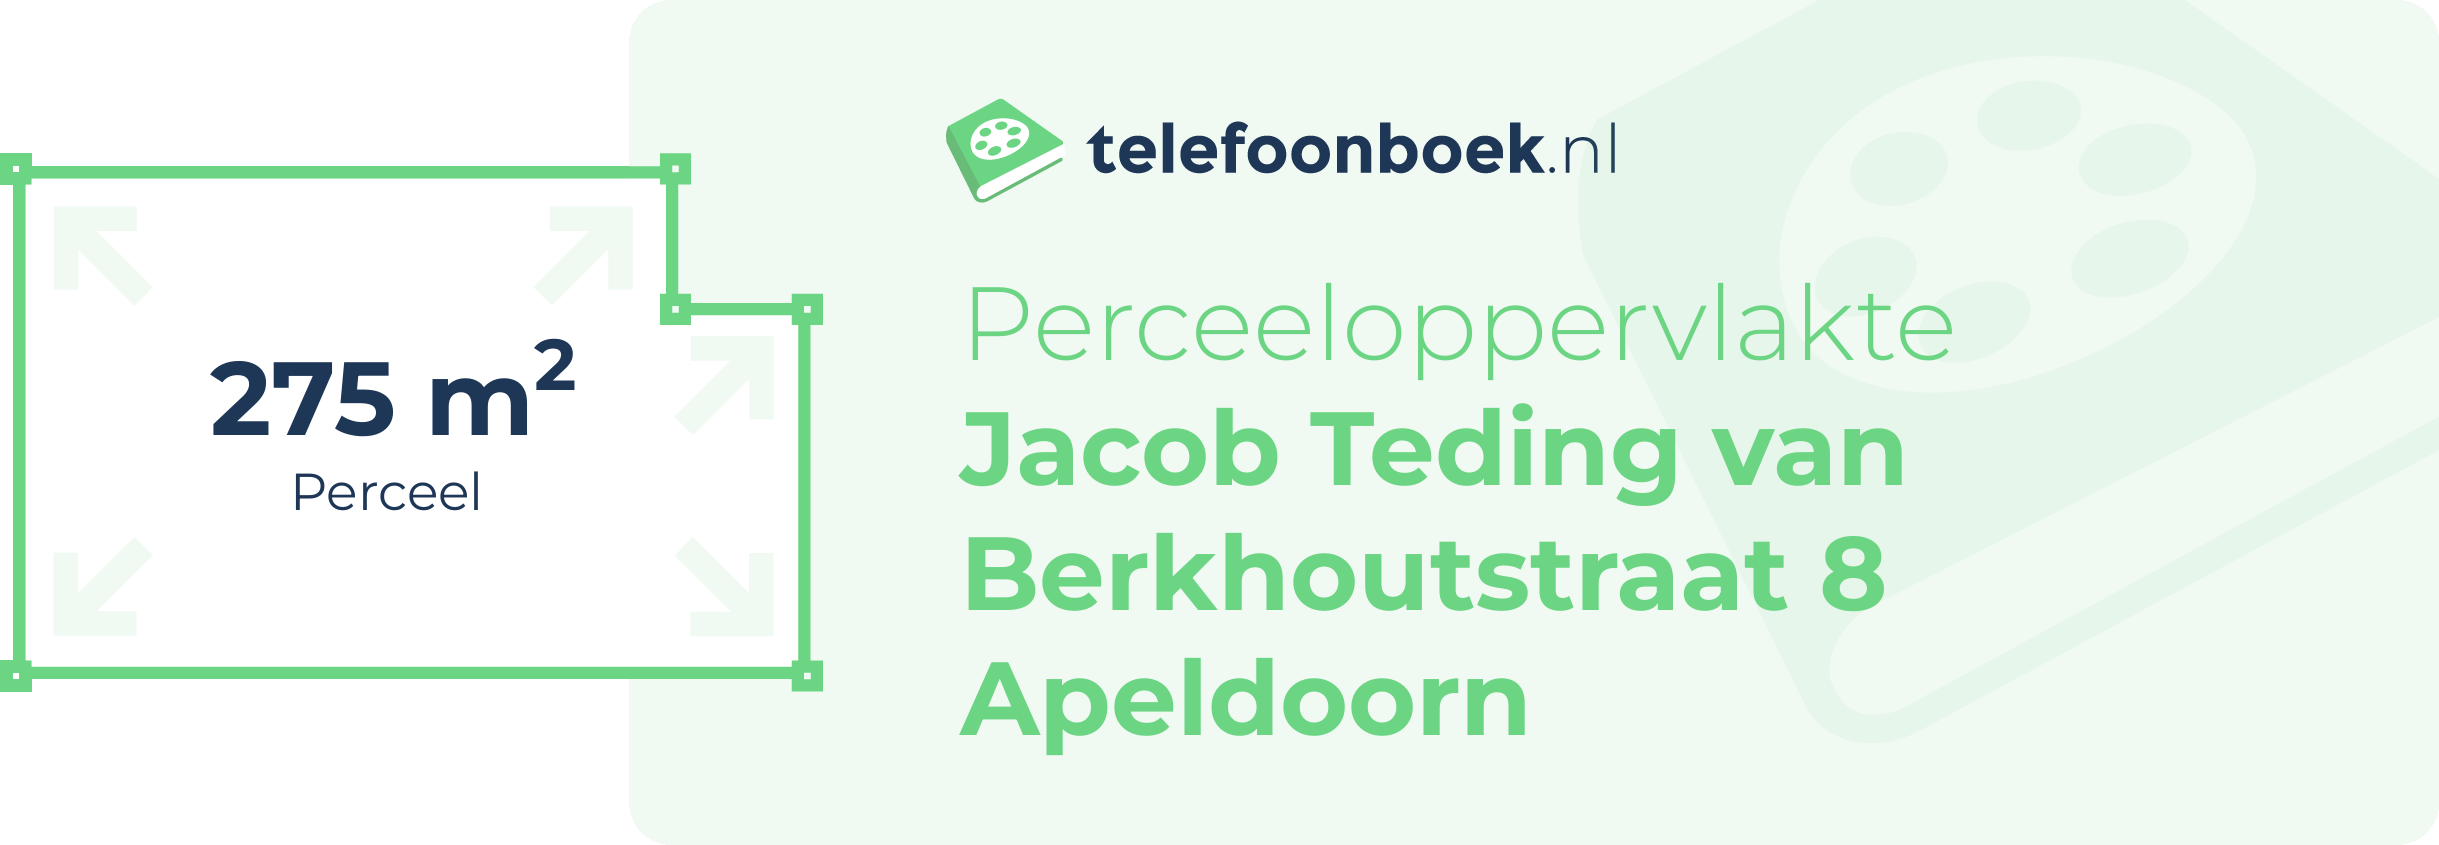 Perceeloppervlakte Jacob Teding Van Berkhoutstraat 8 Apeldoorn